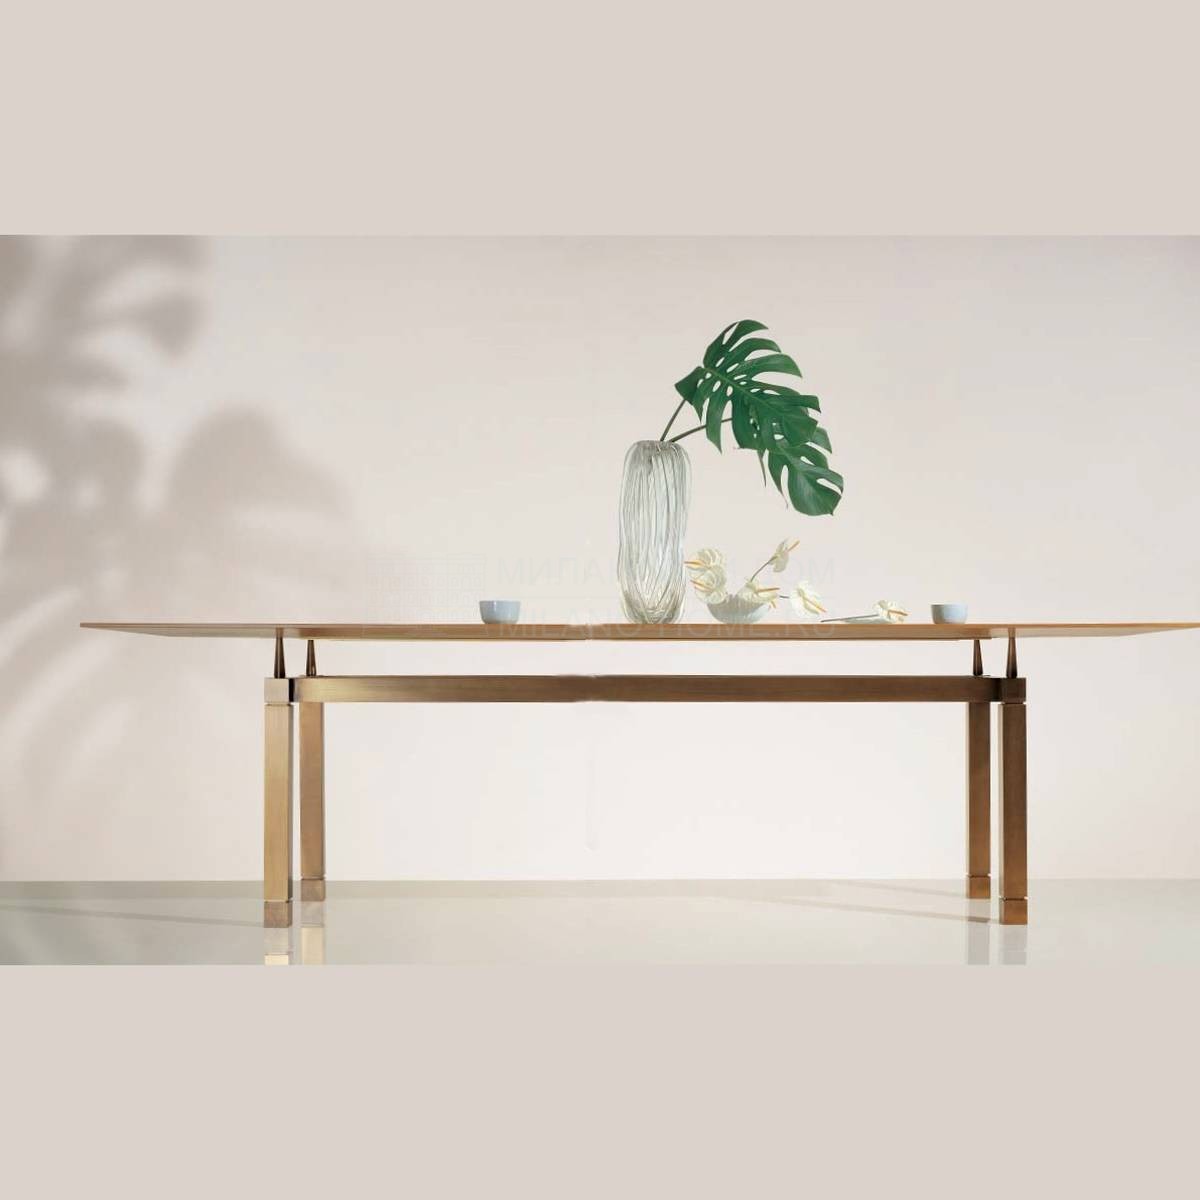 Обеденный стол Oak Design/SC 1026 из Италии фабрики OAK